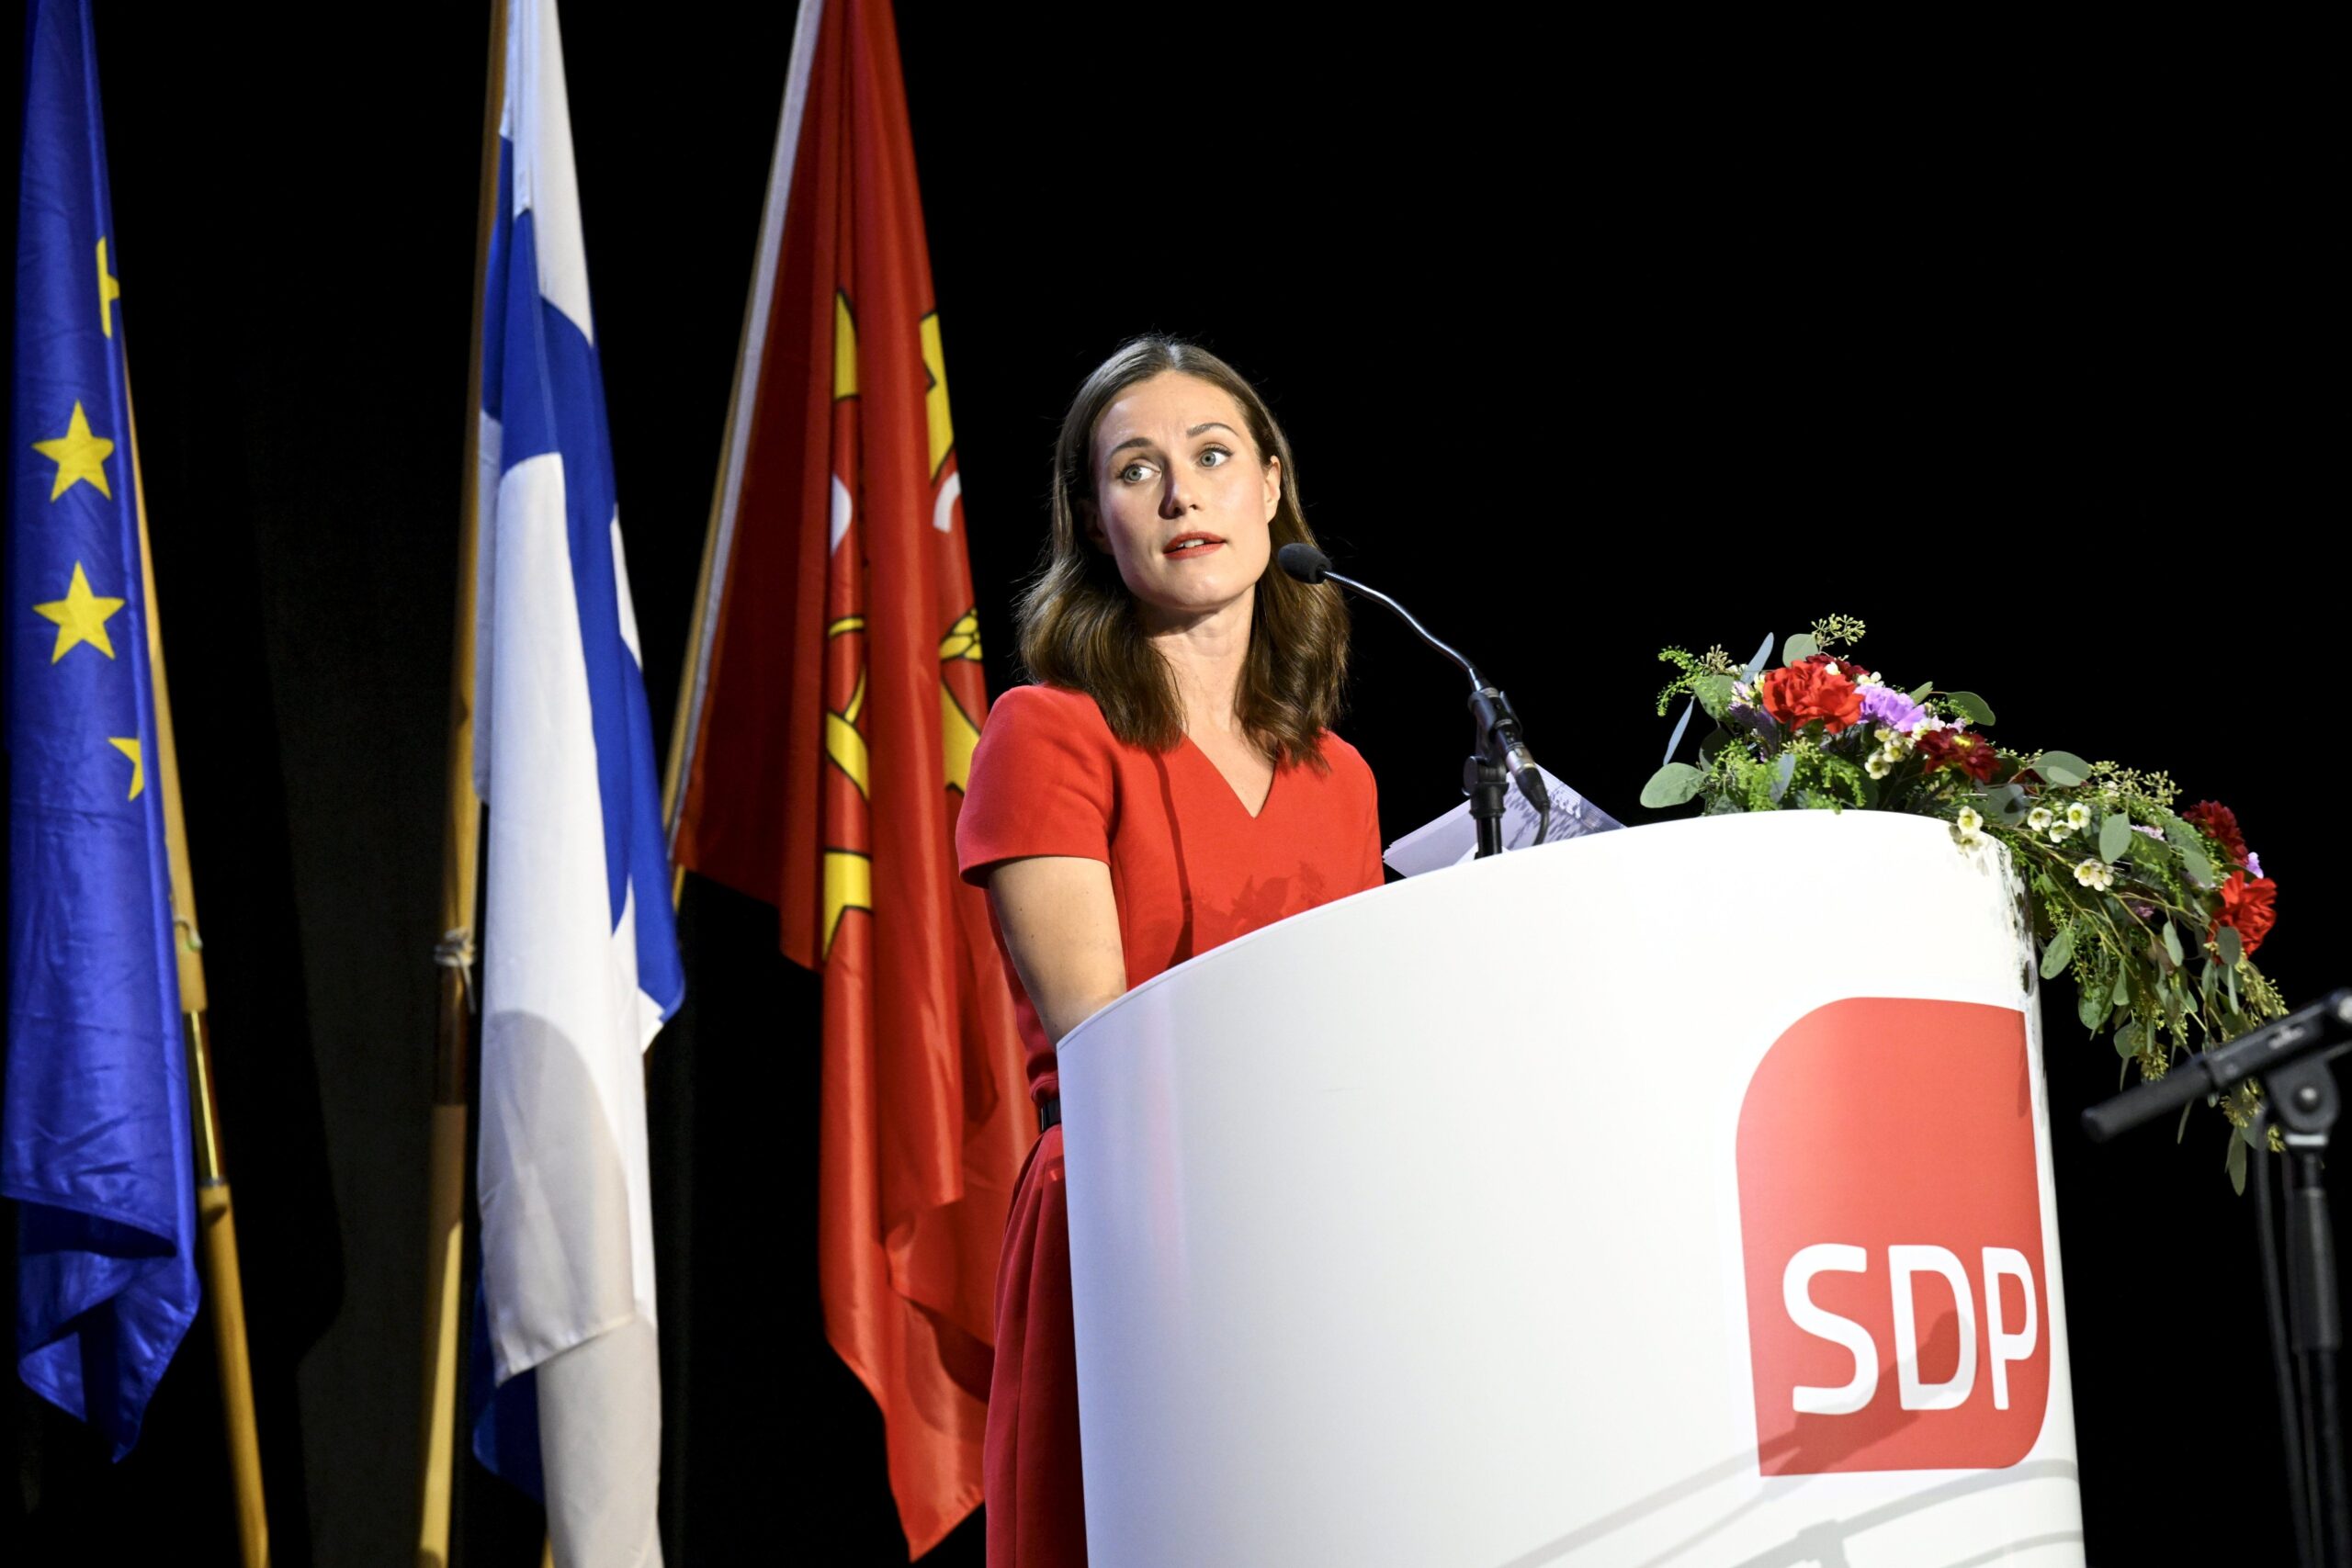 Sanna Marin ist als Vorsitzende der Sozialdemokratischen Partei Finnlands (SDP) zurückgetreten.